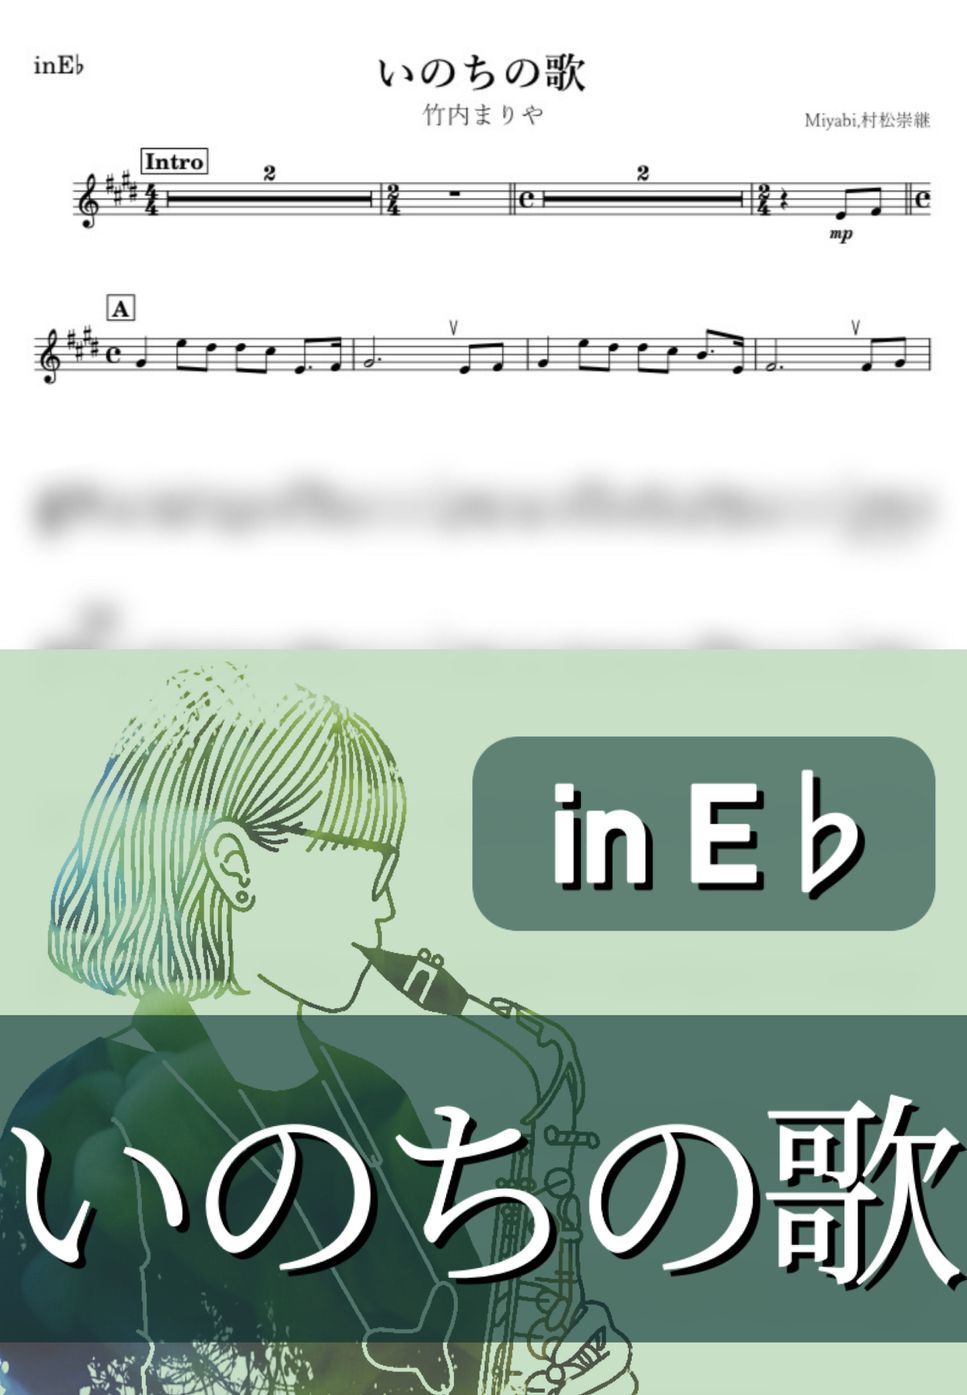 竹内まりや - いのちの歌 (E♭) by kanamusic